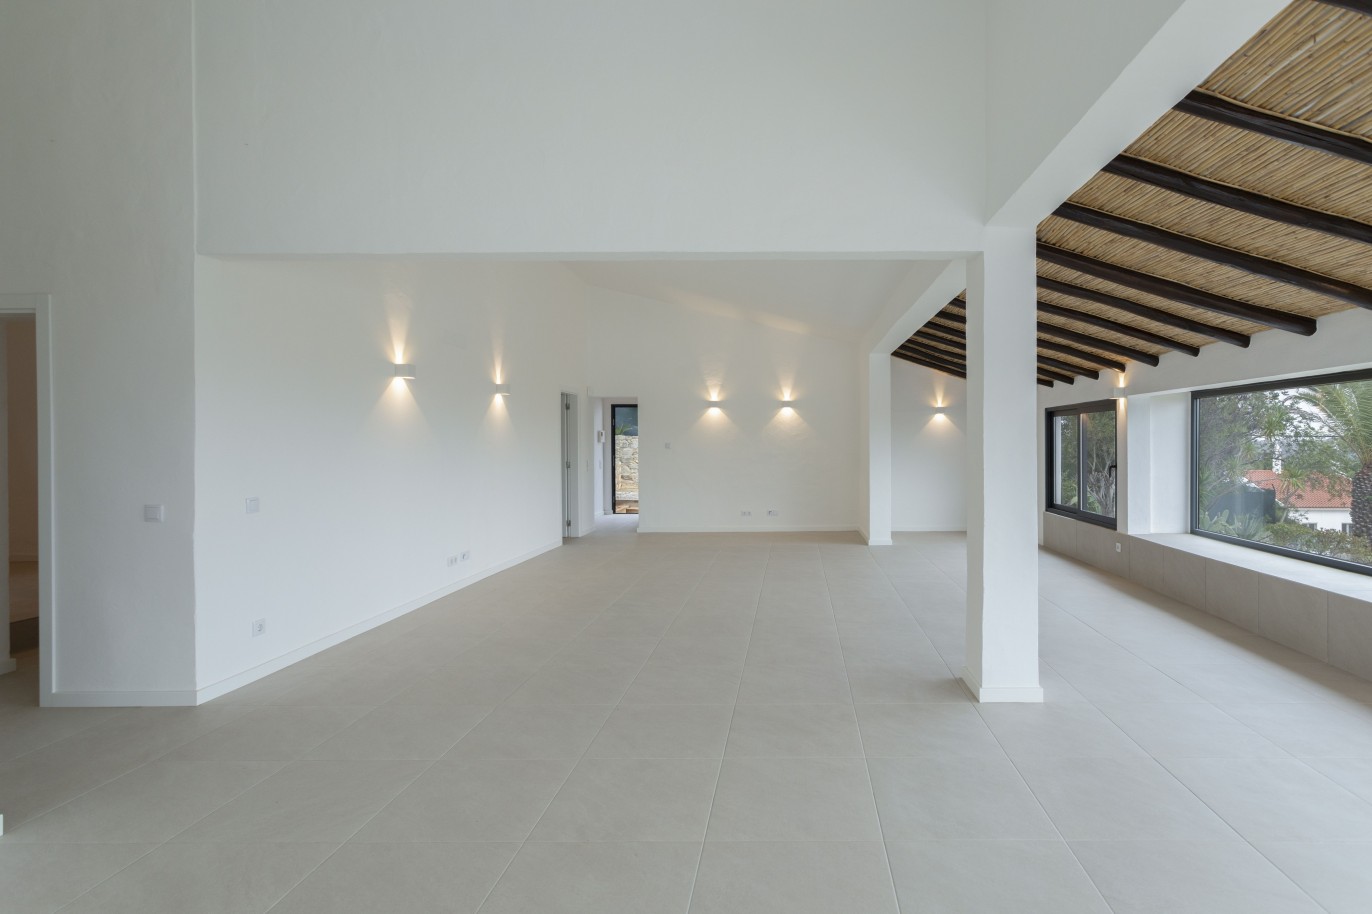 3 bedroom villa with sea view and pool, for sale in Santa Barbara, Algarve_245044